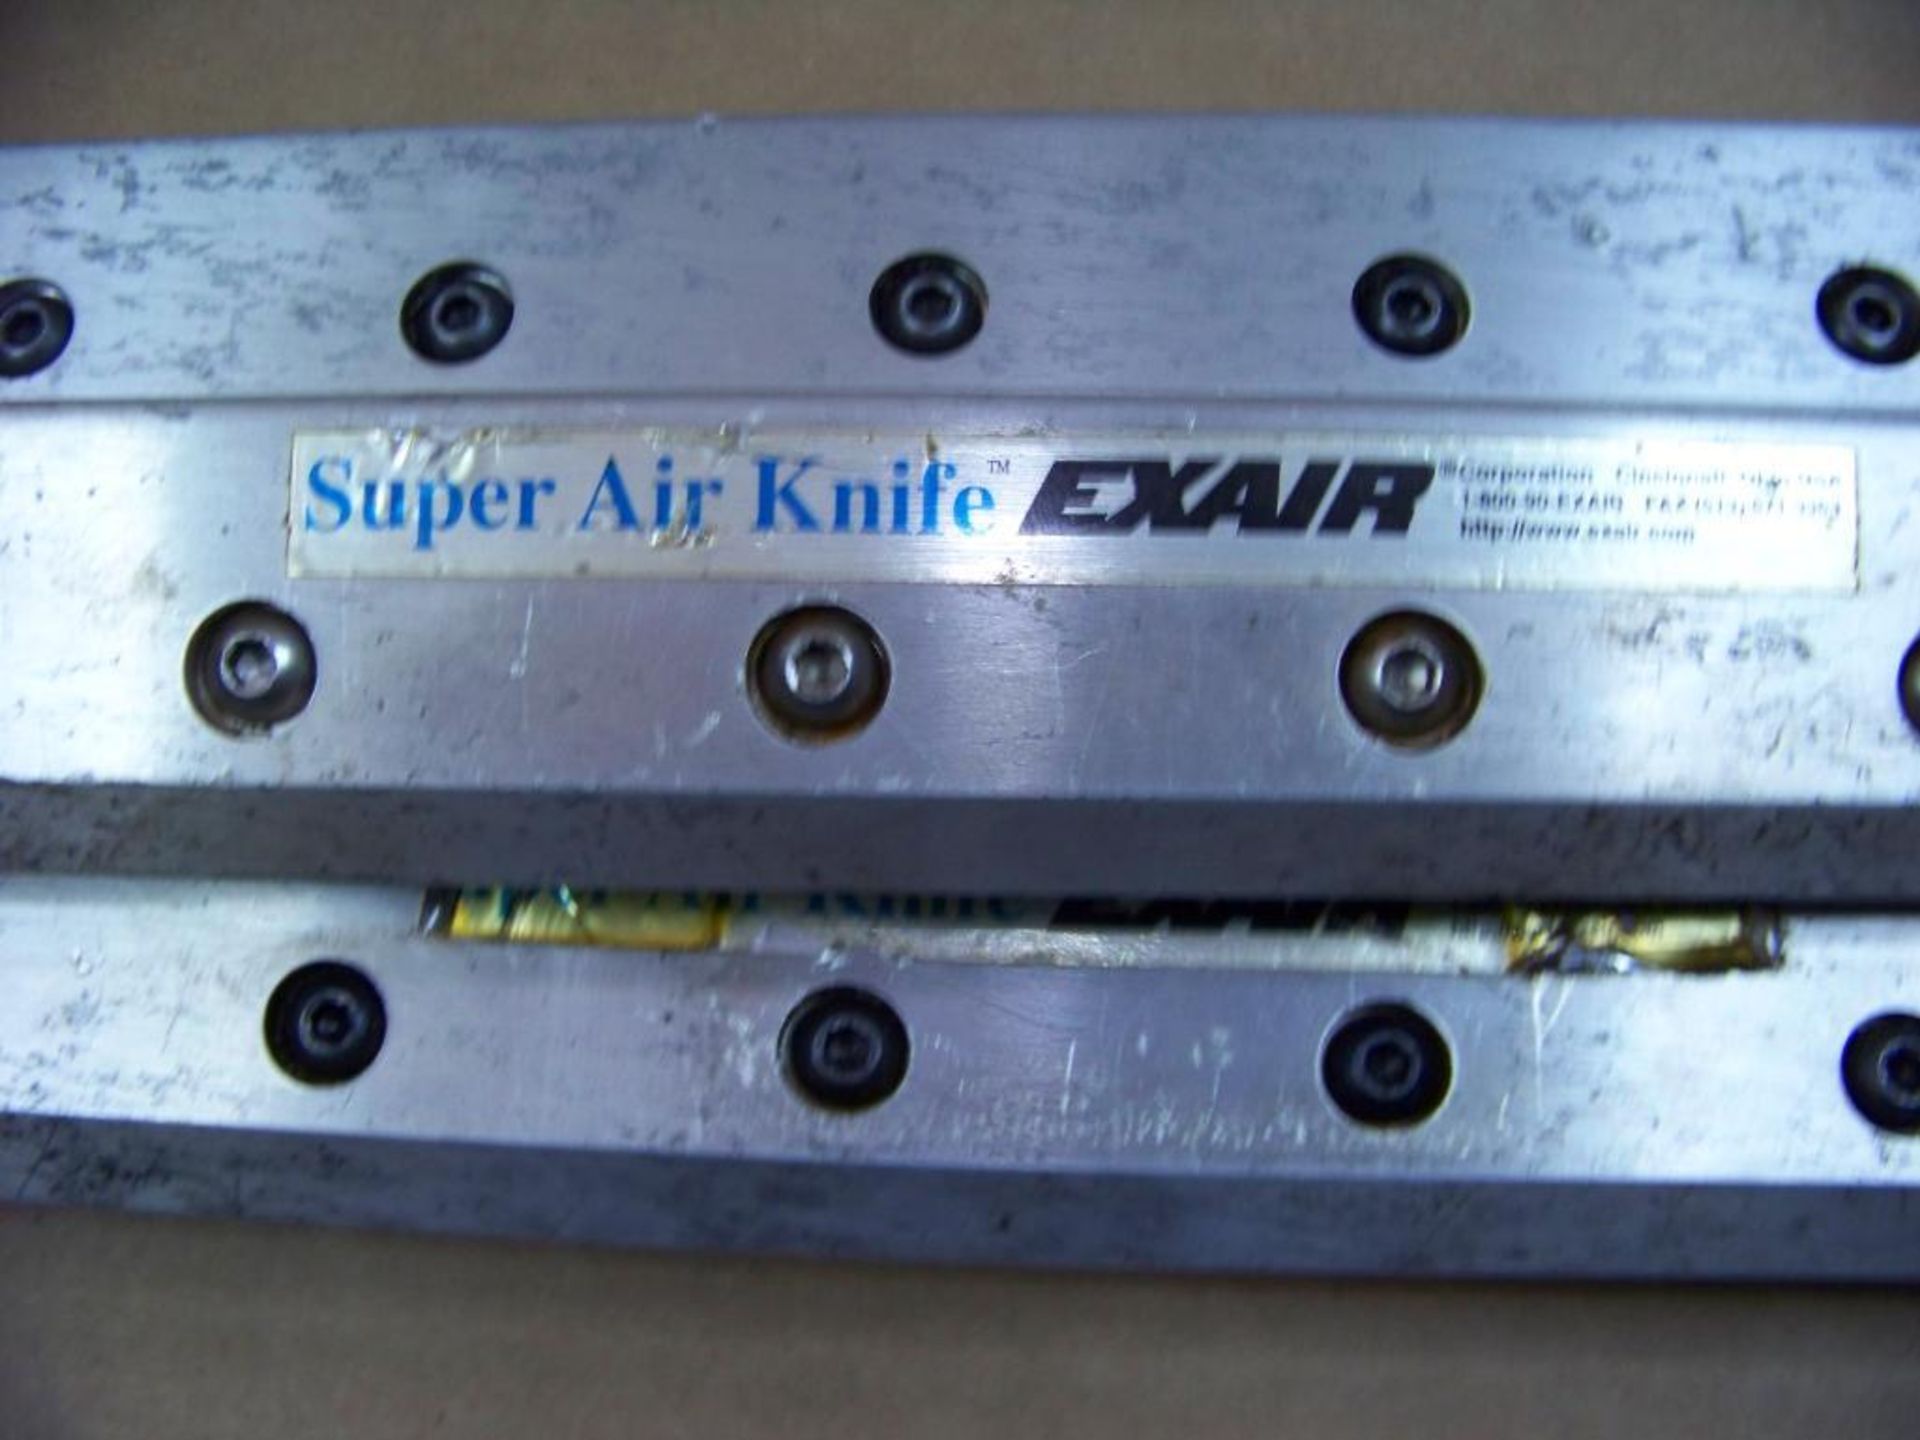 3 Exair Air Knives - Image 2 of 3